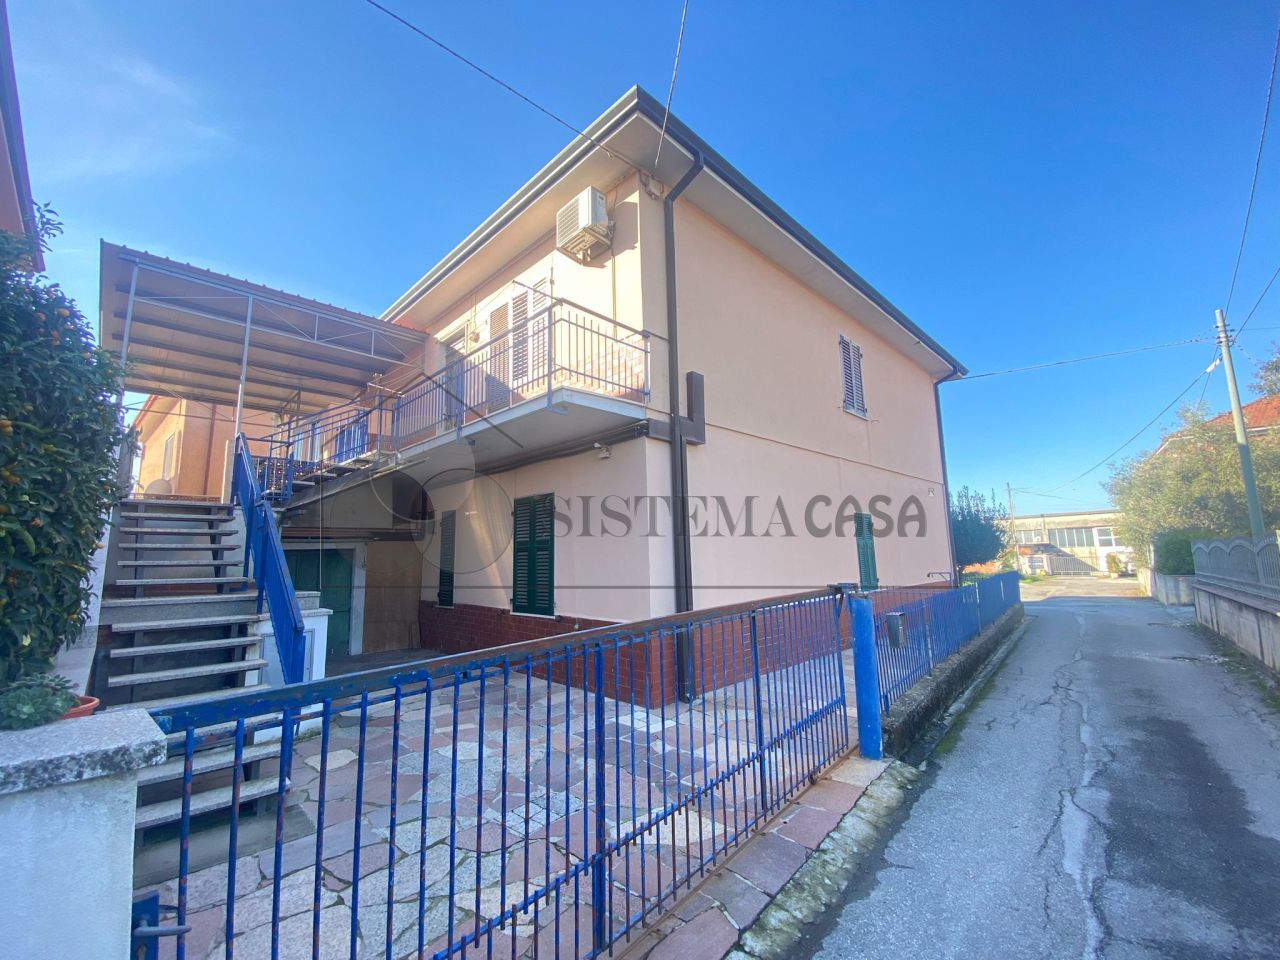 Appartamento in vendita a Castelnuovo Magra, 5 locali, prezzo € 180.000 | PortaleAgenzieImmobiliari.it